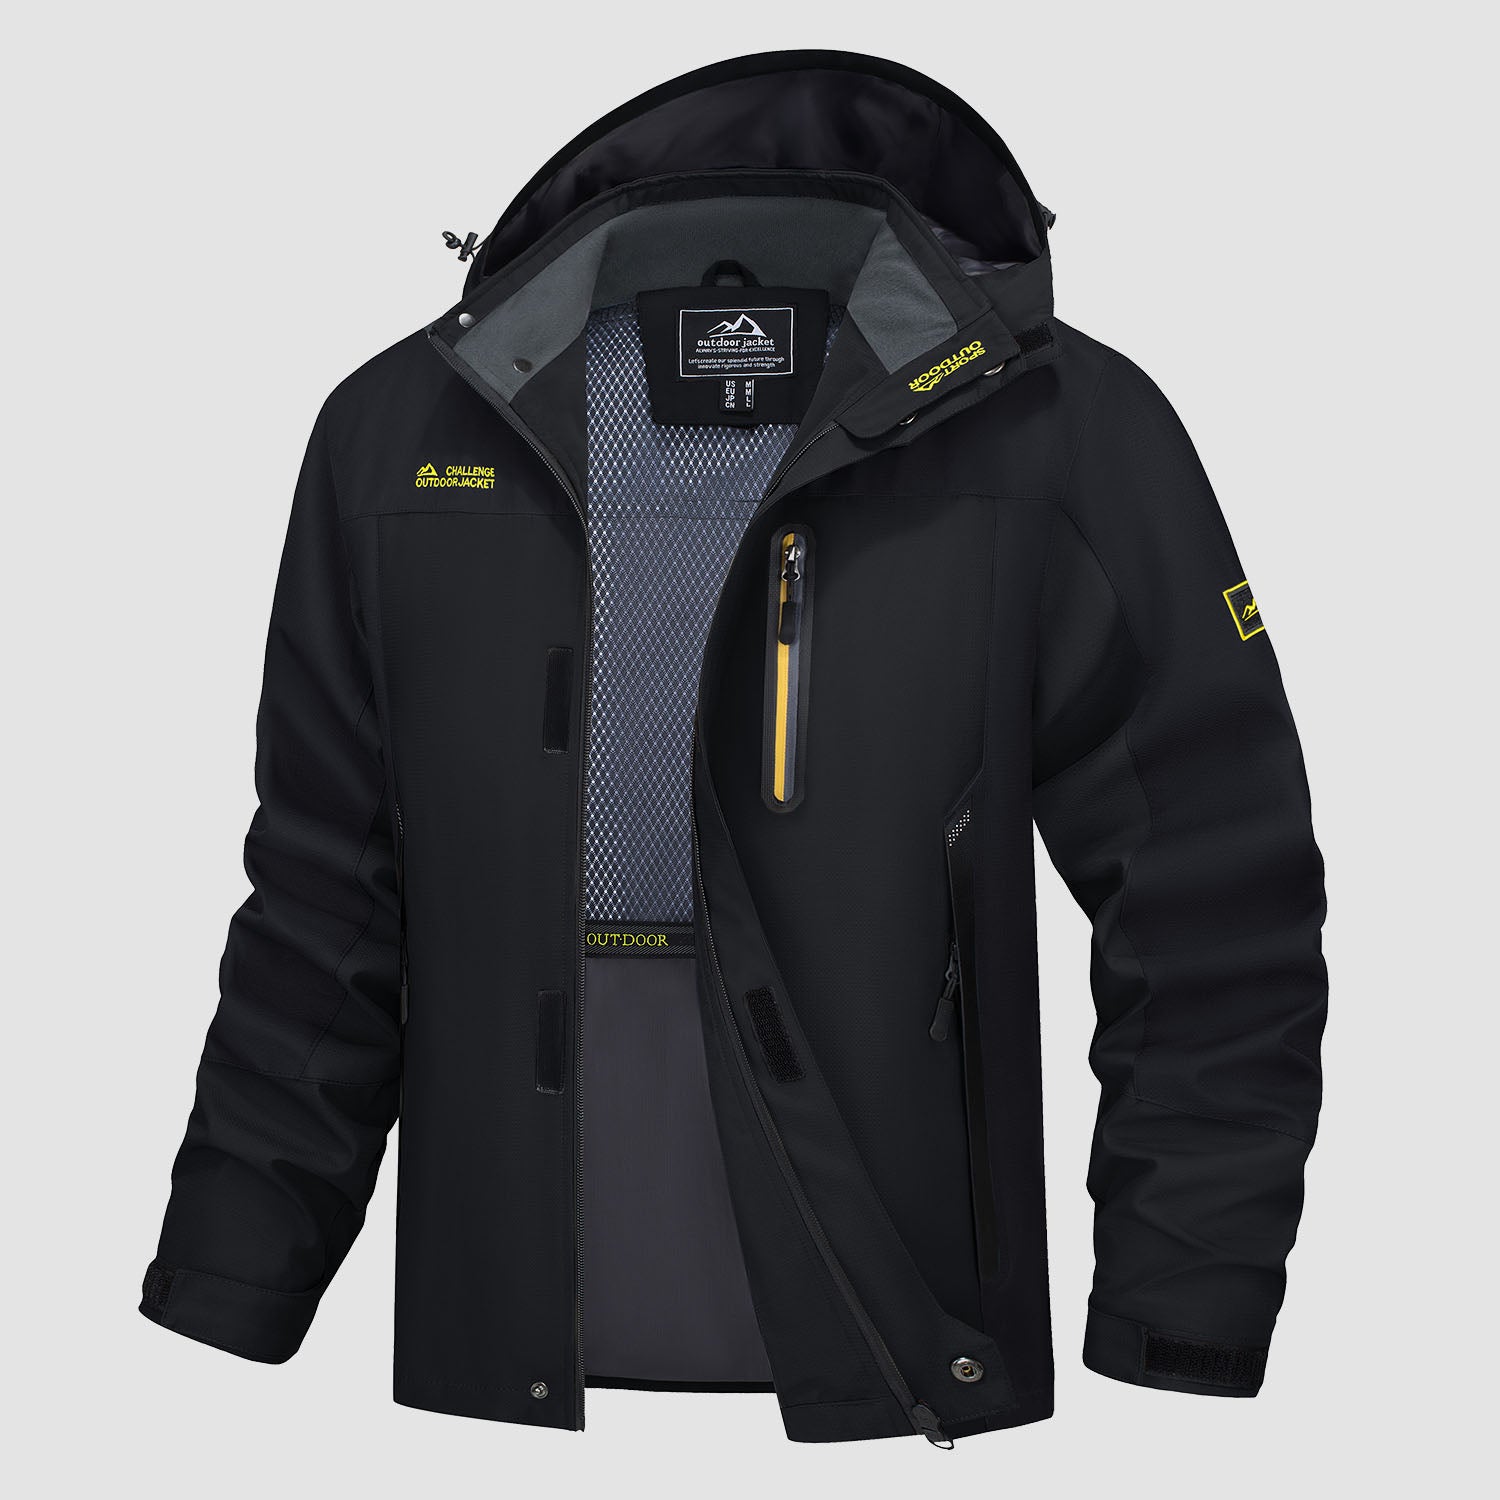 Men's Hooded Jacket Waterproof Windbreaker Coat for Outdoors, Black / L